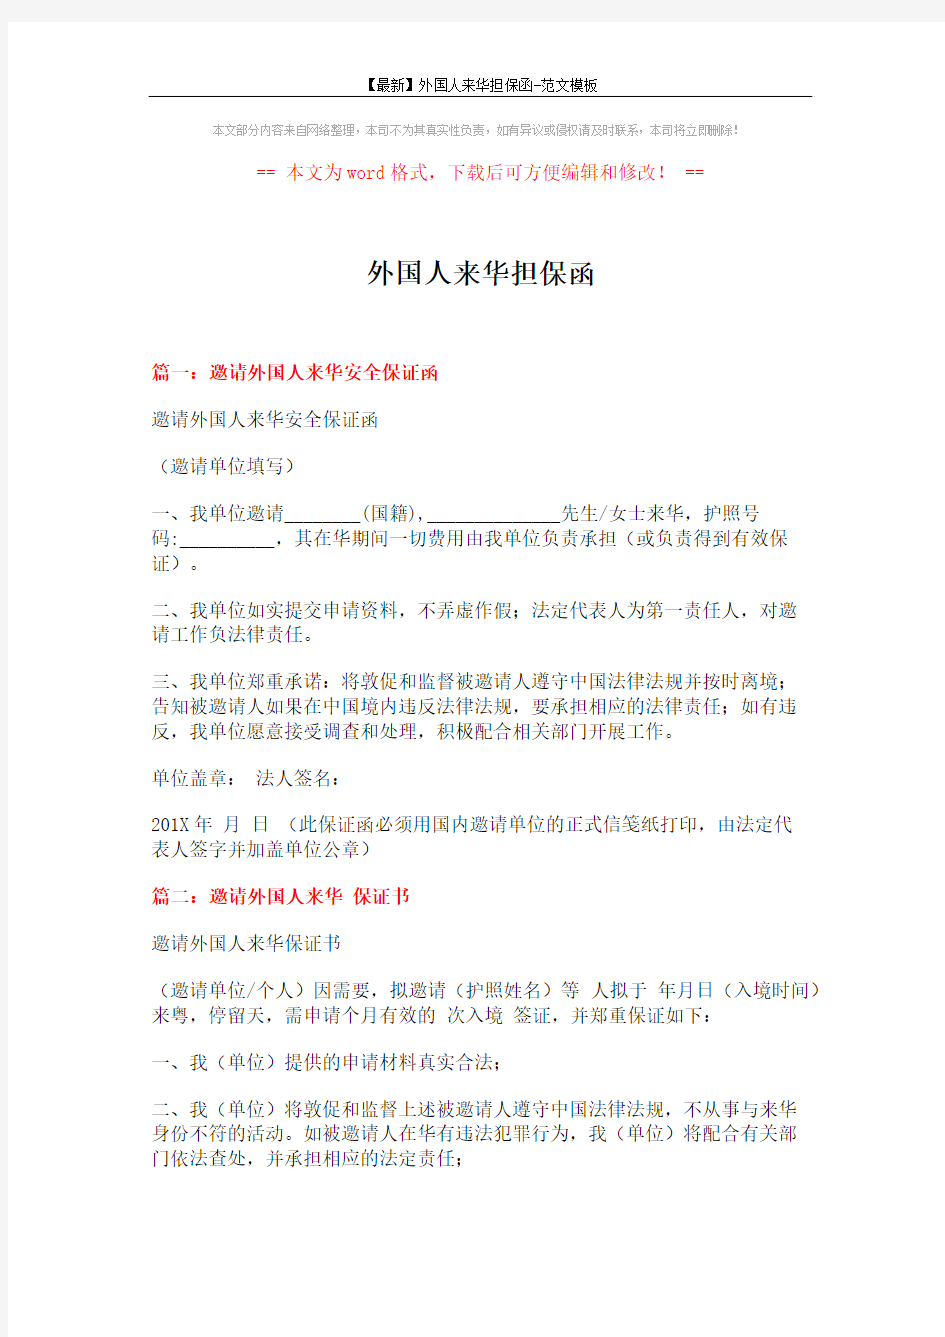 【最新】外国人来华担保函-范文模板 (3页)